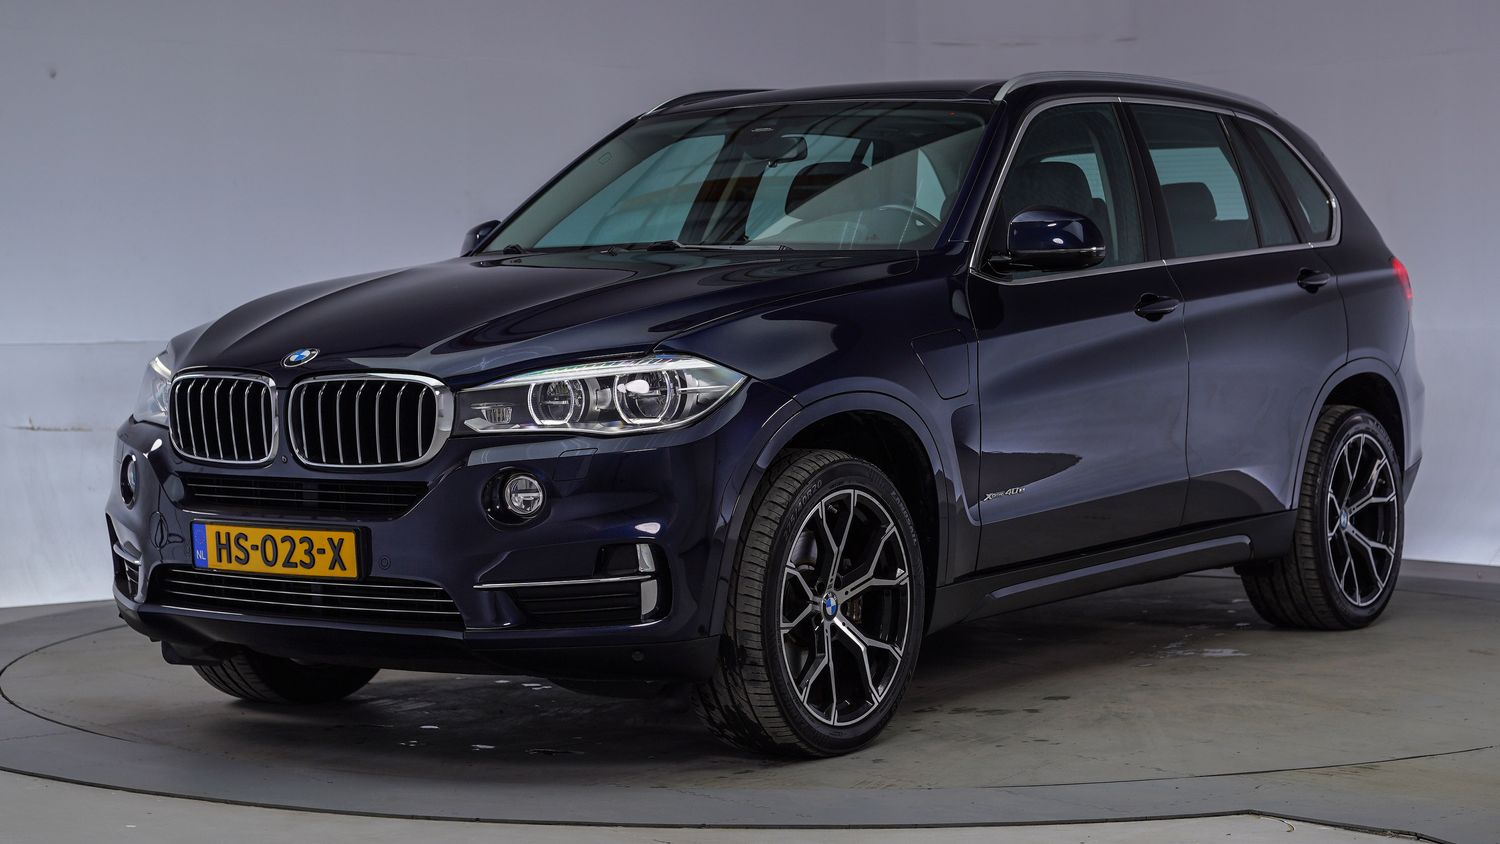 BMW X5 SUV / Terreinwagen 2015 HS-023-X 1